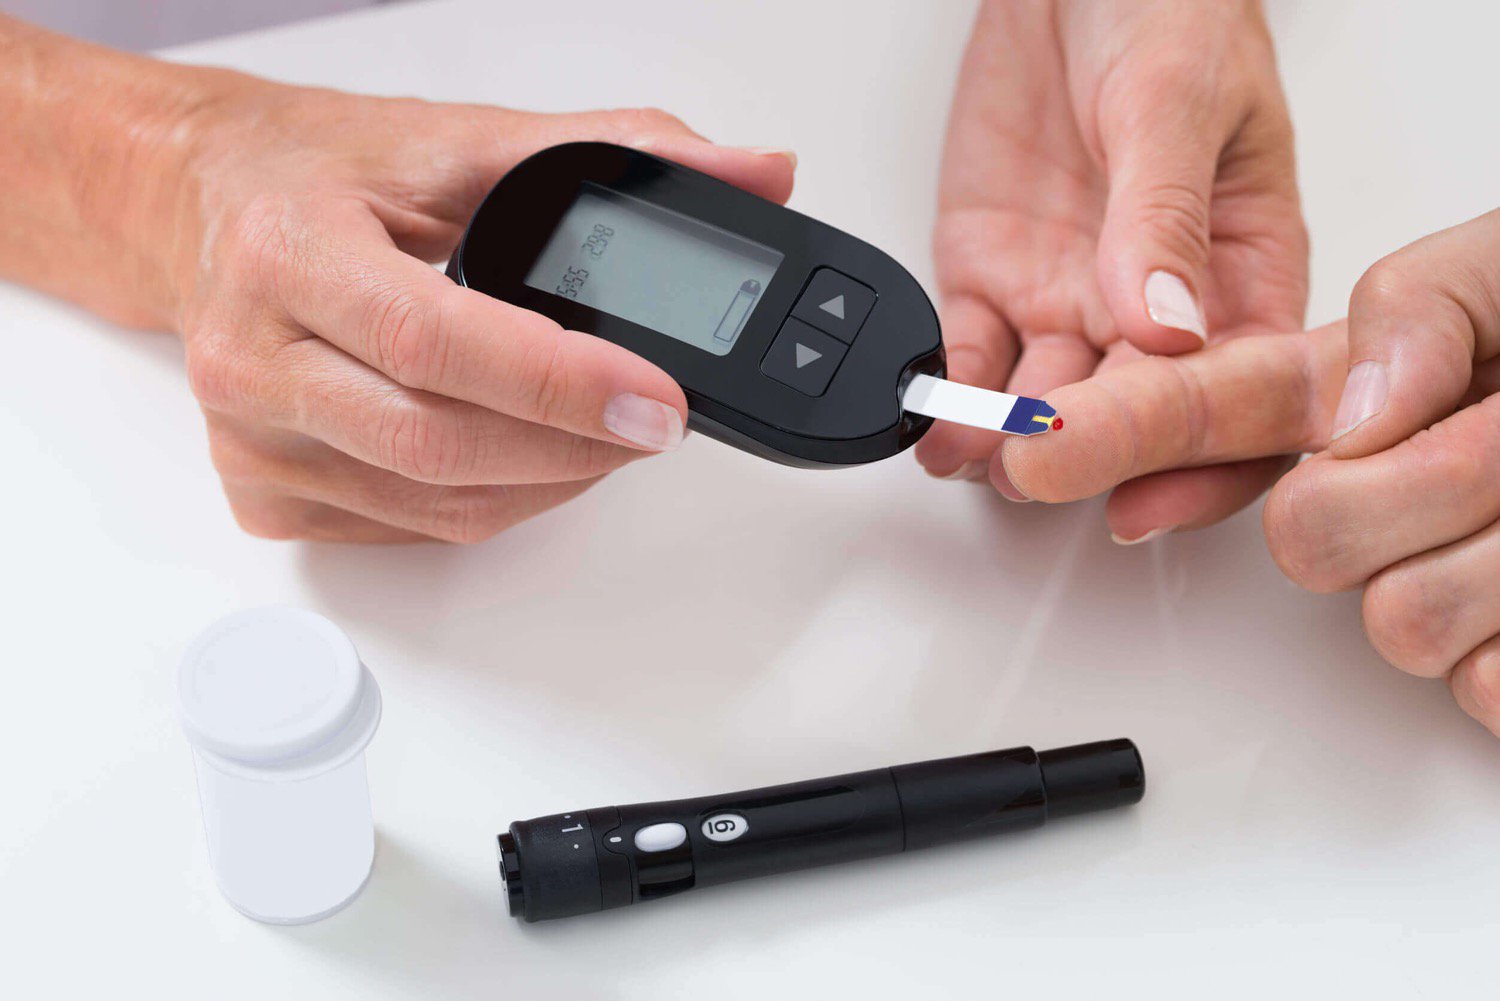 Ein neuer Start hilft Patienten mit Diabetes ohne Medikamente auskommen